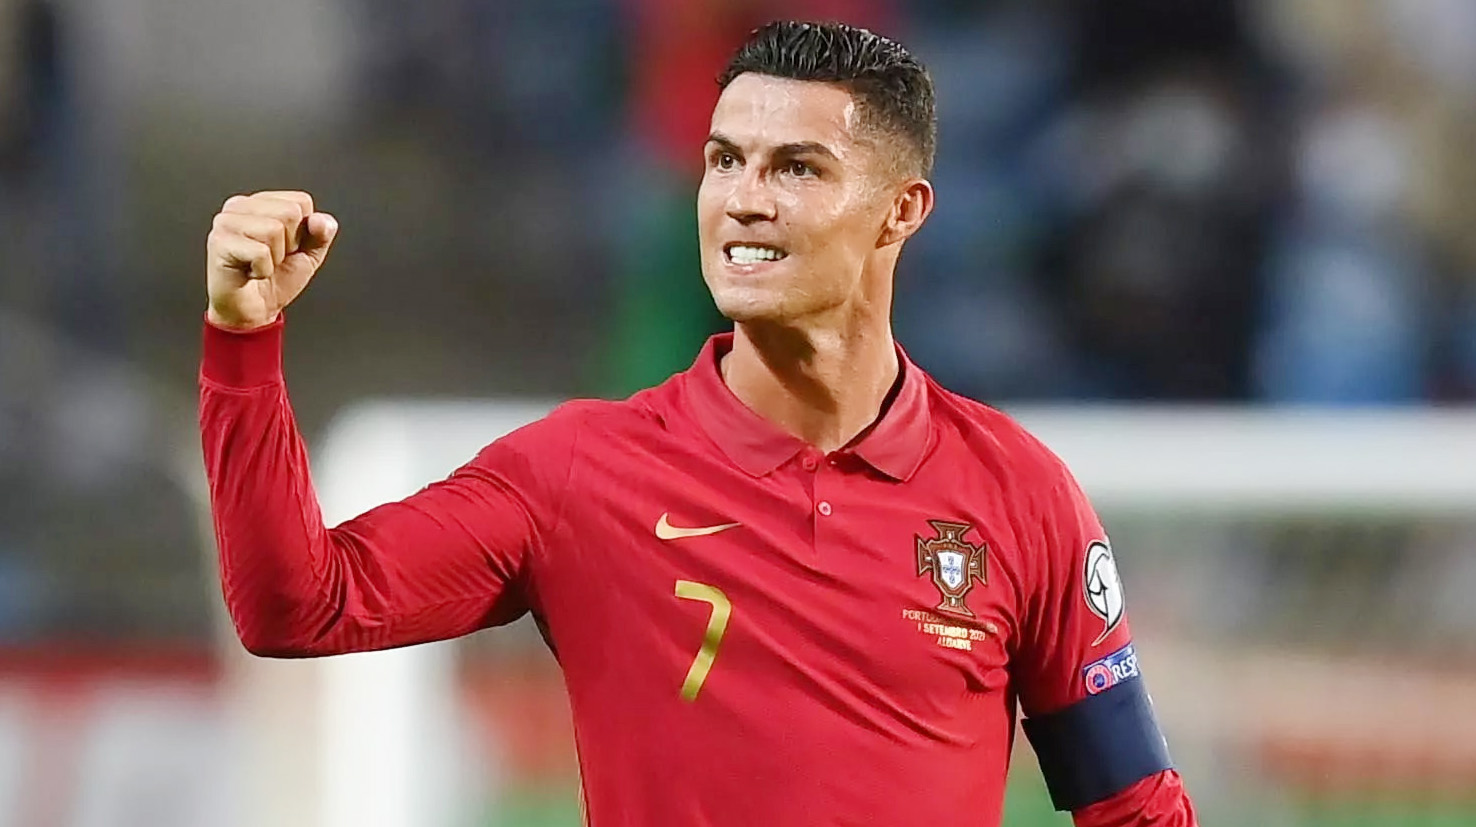 Eroul Portugaliei, Goncalo Ramos, după tripla contra Elveției. Ce spune despre Cristiano Ronaldo: ”A vorbit cu mine!”